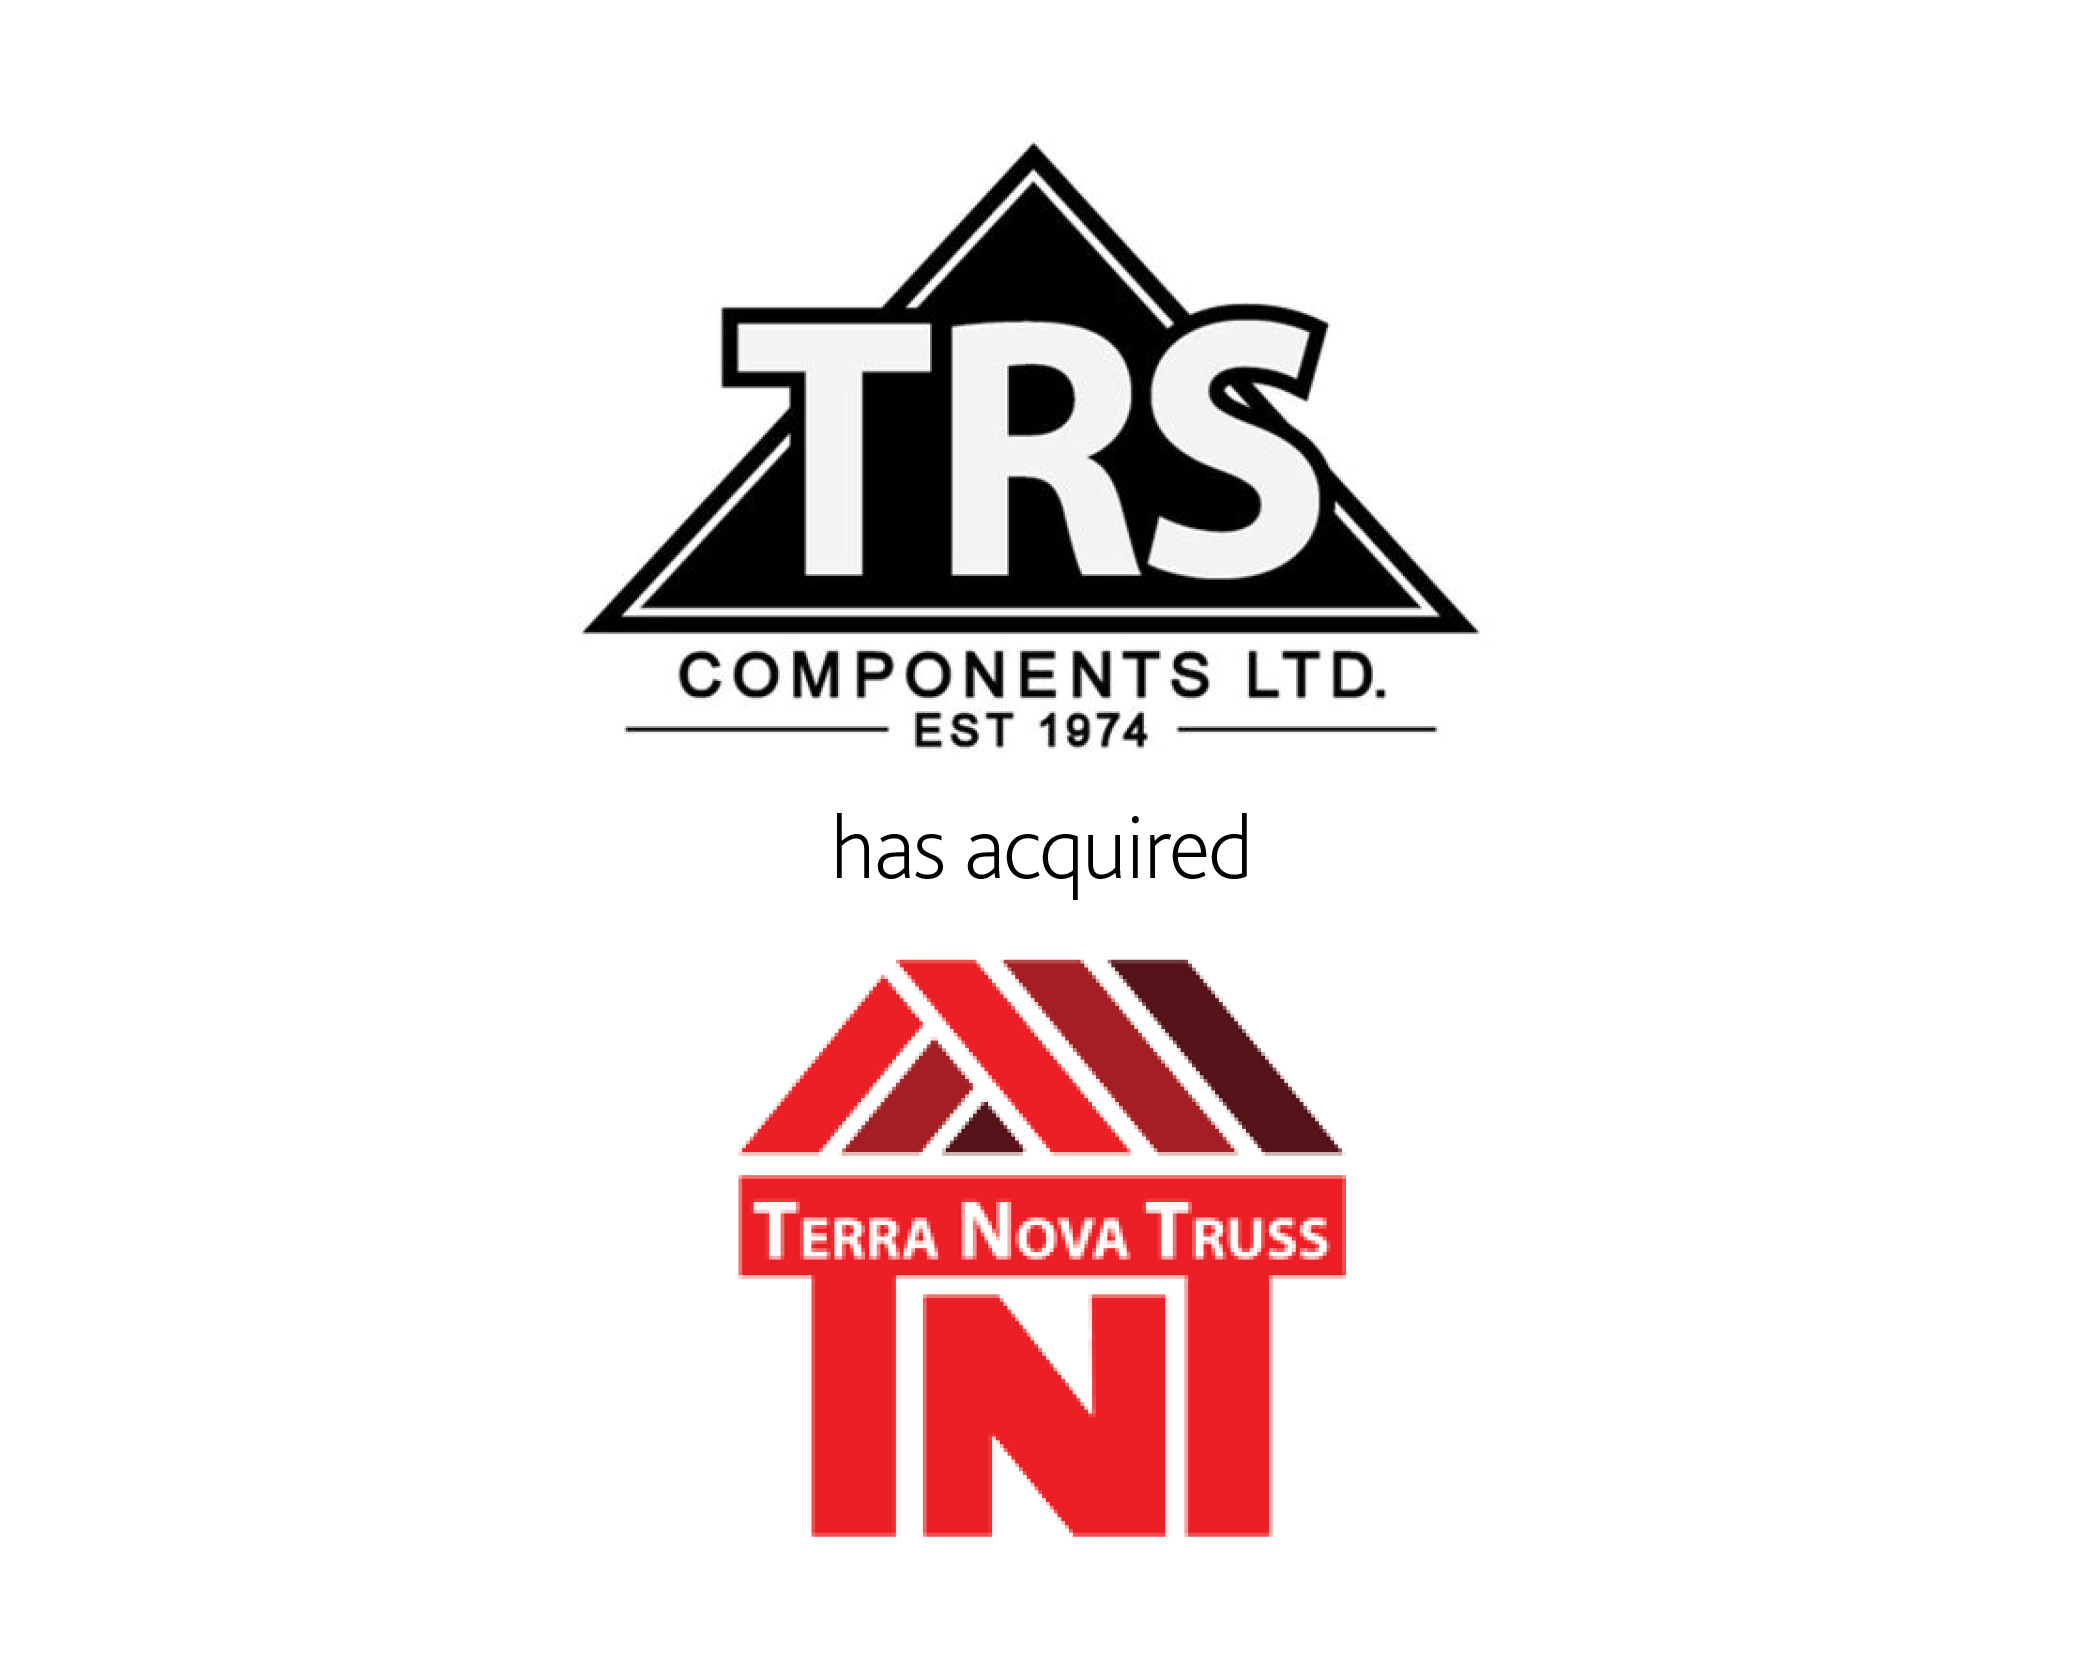 Terranova and TRS logos